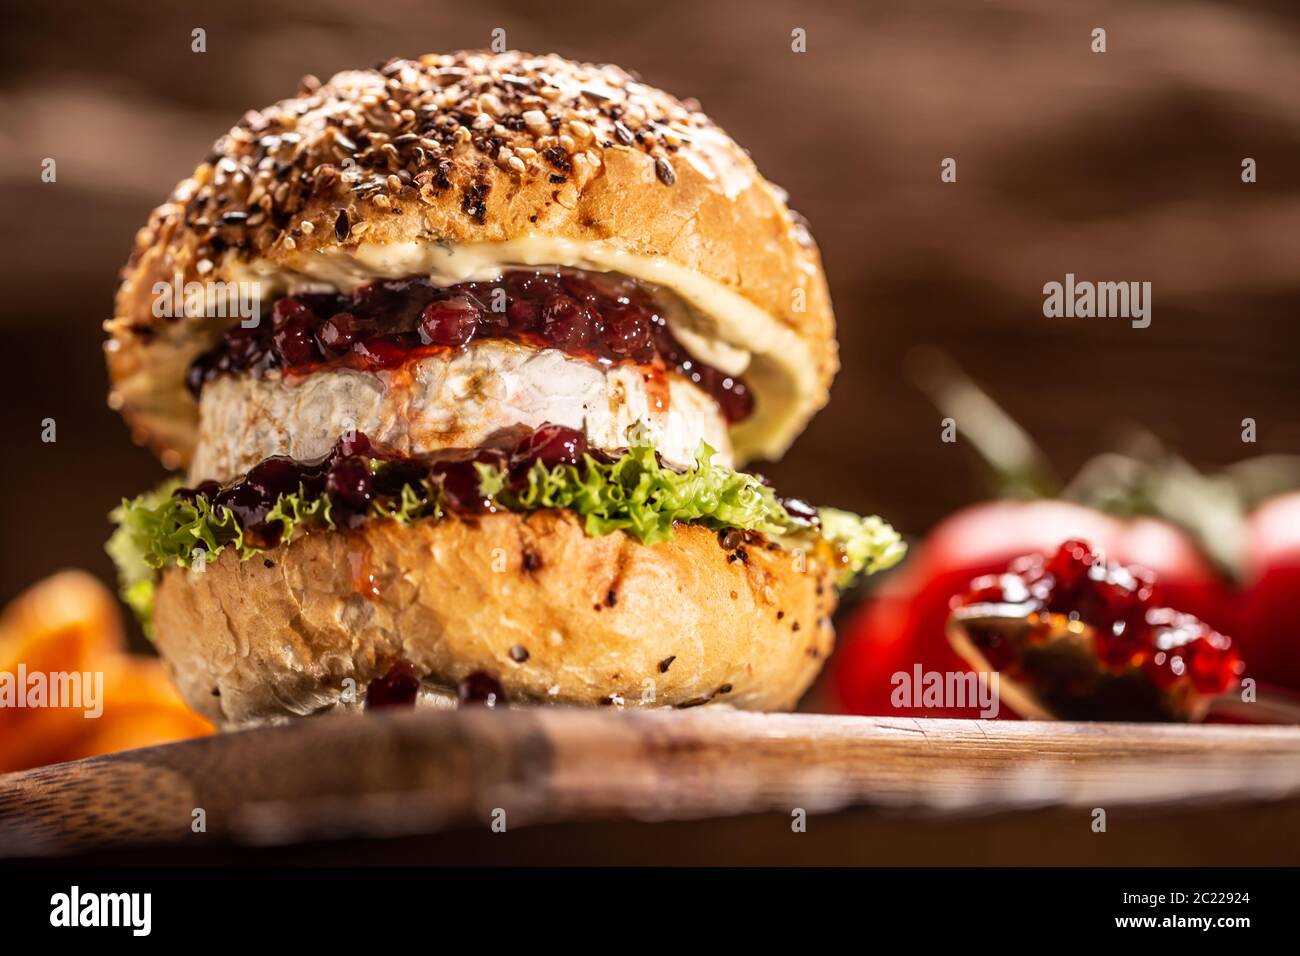 Hamburger végétarien avec sauce camembert et canneberge sur un bois rustique Banque D'Images